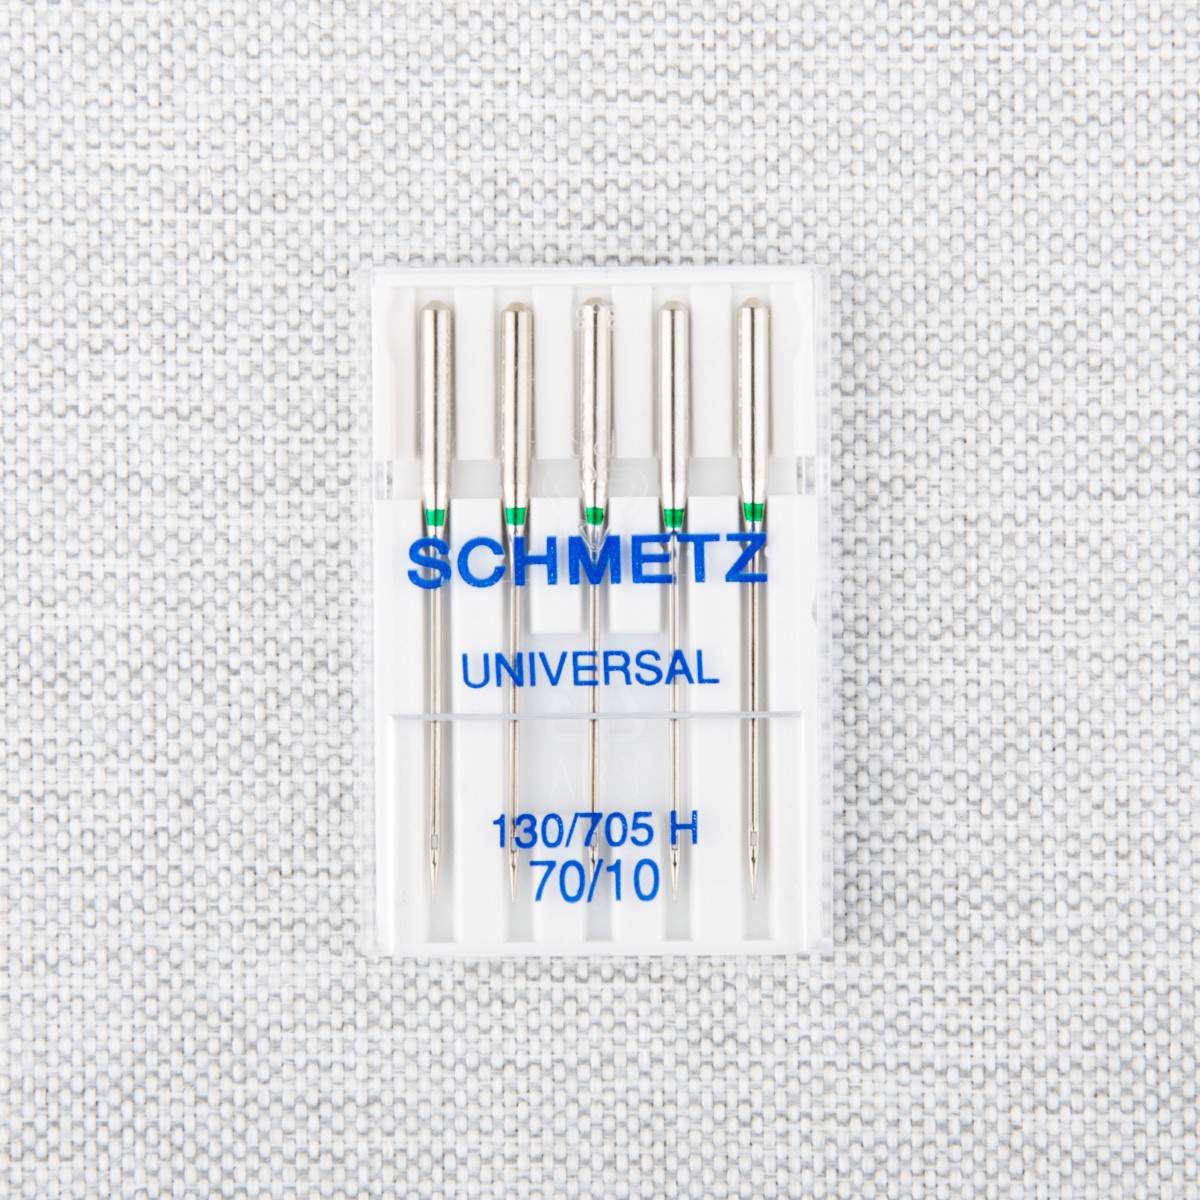 Schmetz Aiguilles universelles Schmetz #1708 - 70/10 - 5 unités